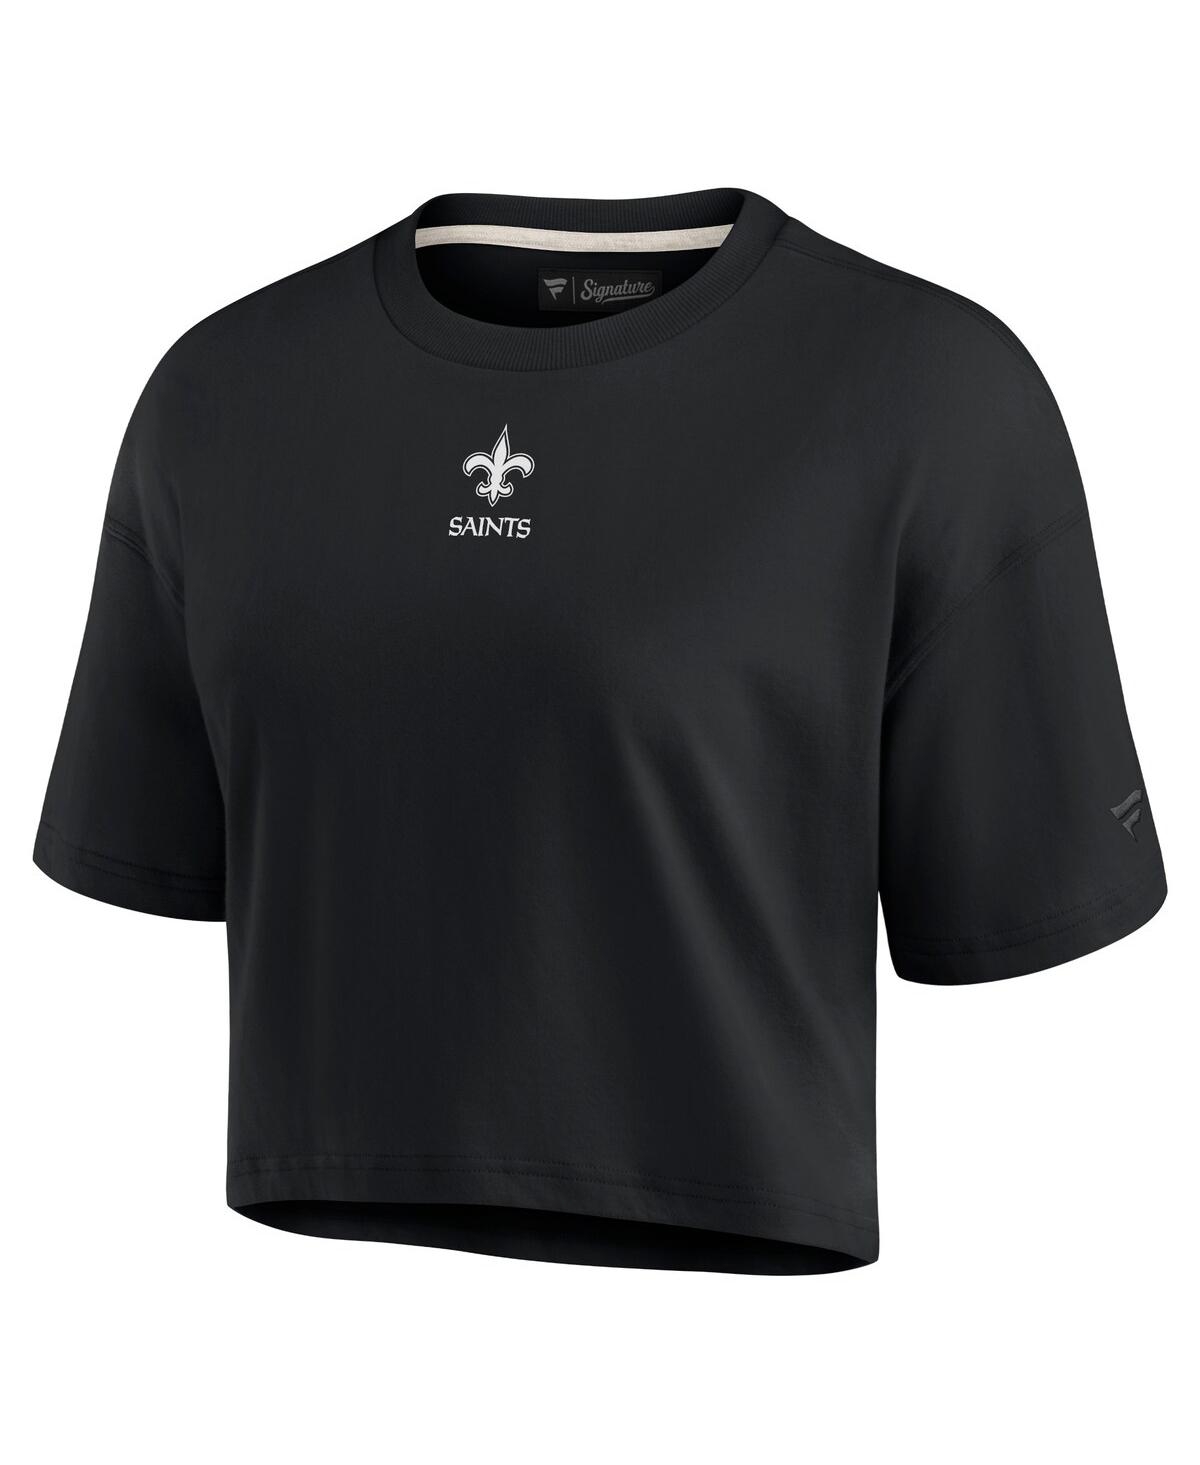 Shop Fanatics Signature Women's  Black New Orleans Saints Super Soft Short Sleeve Cropped T-shirt